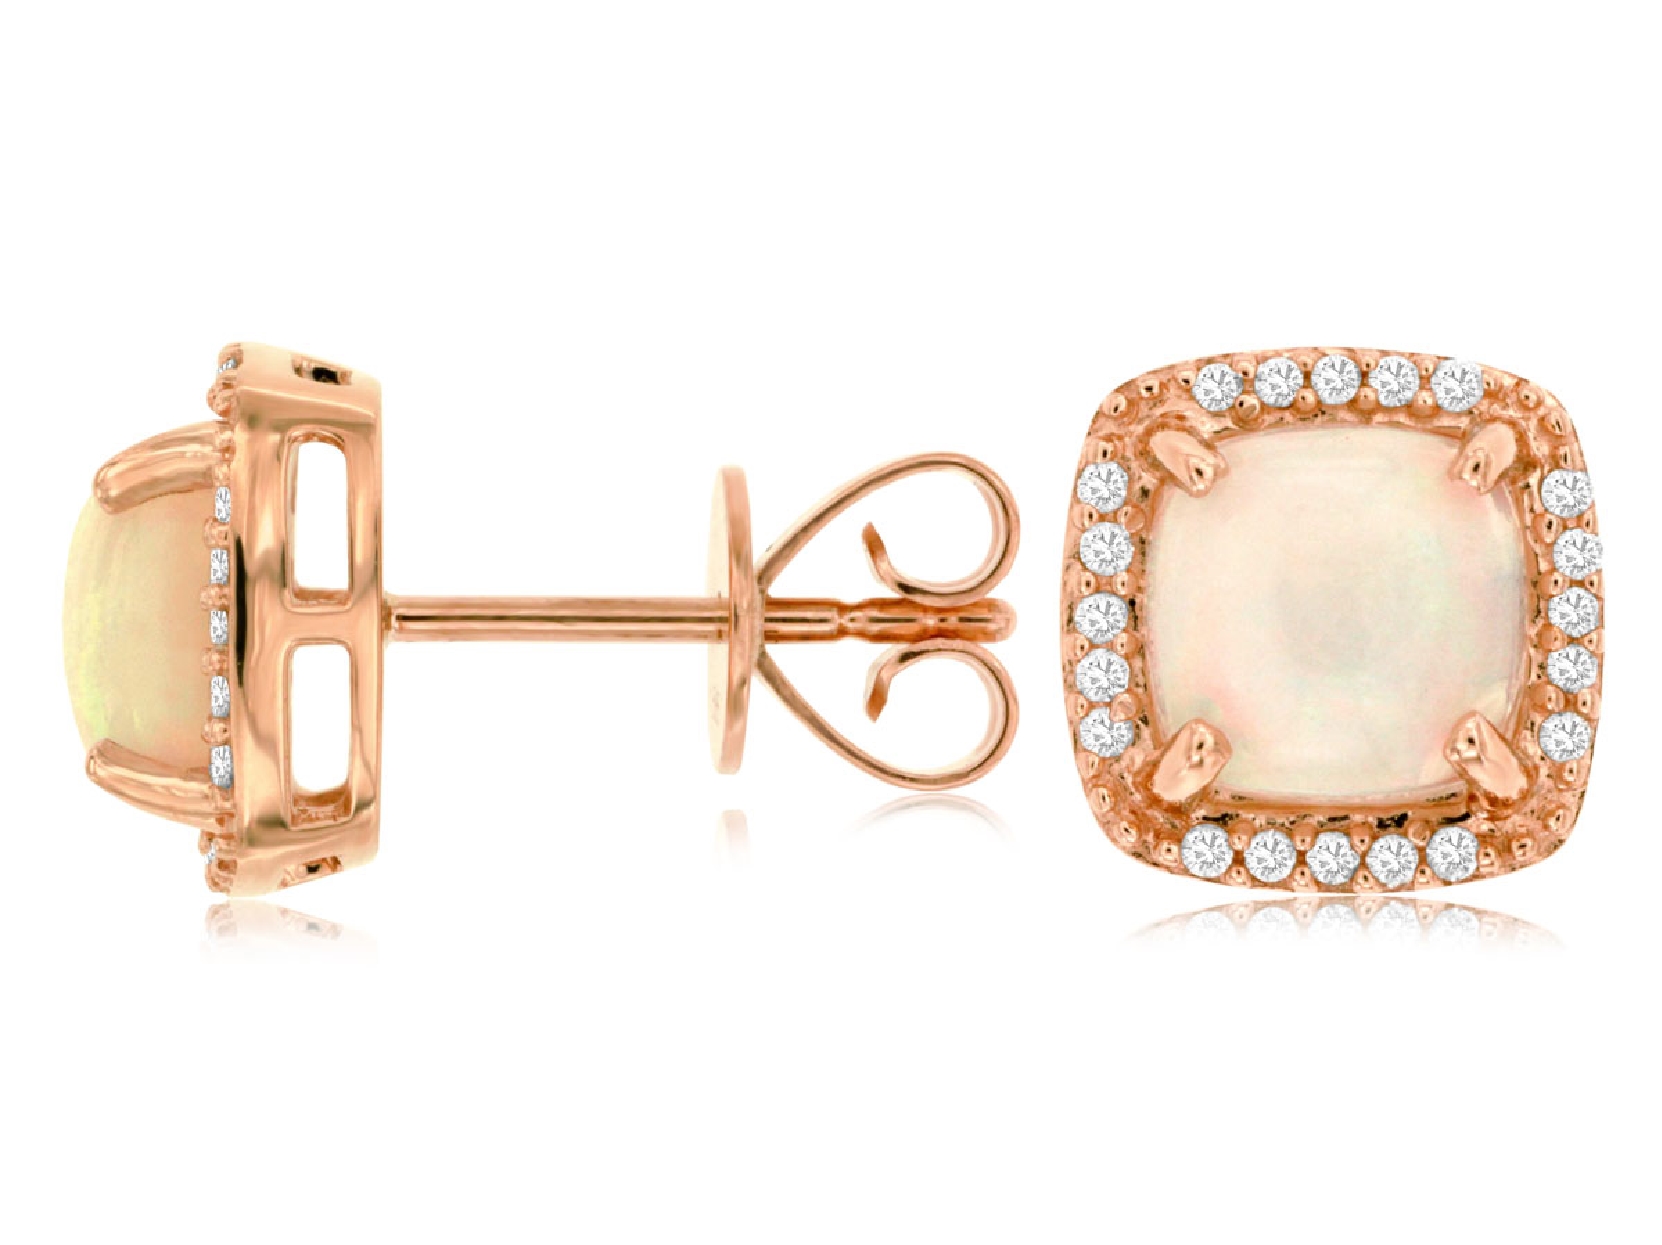 14K Rose Gold Opal & Diamon earring 
.16CTTW DIAMOND
1.80CTTW OPAL 